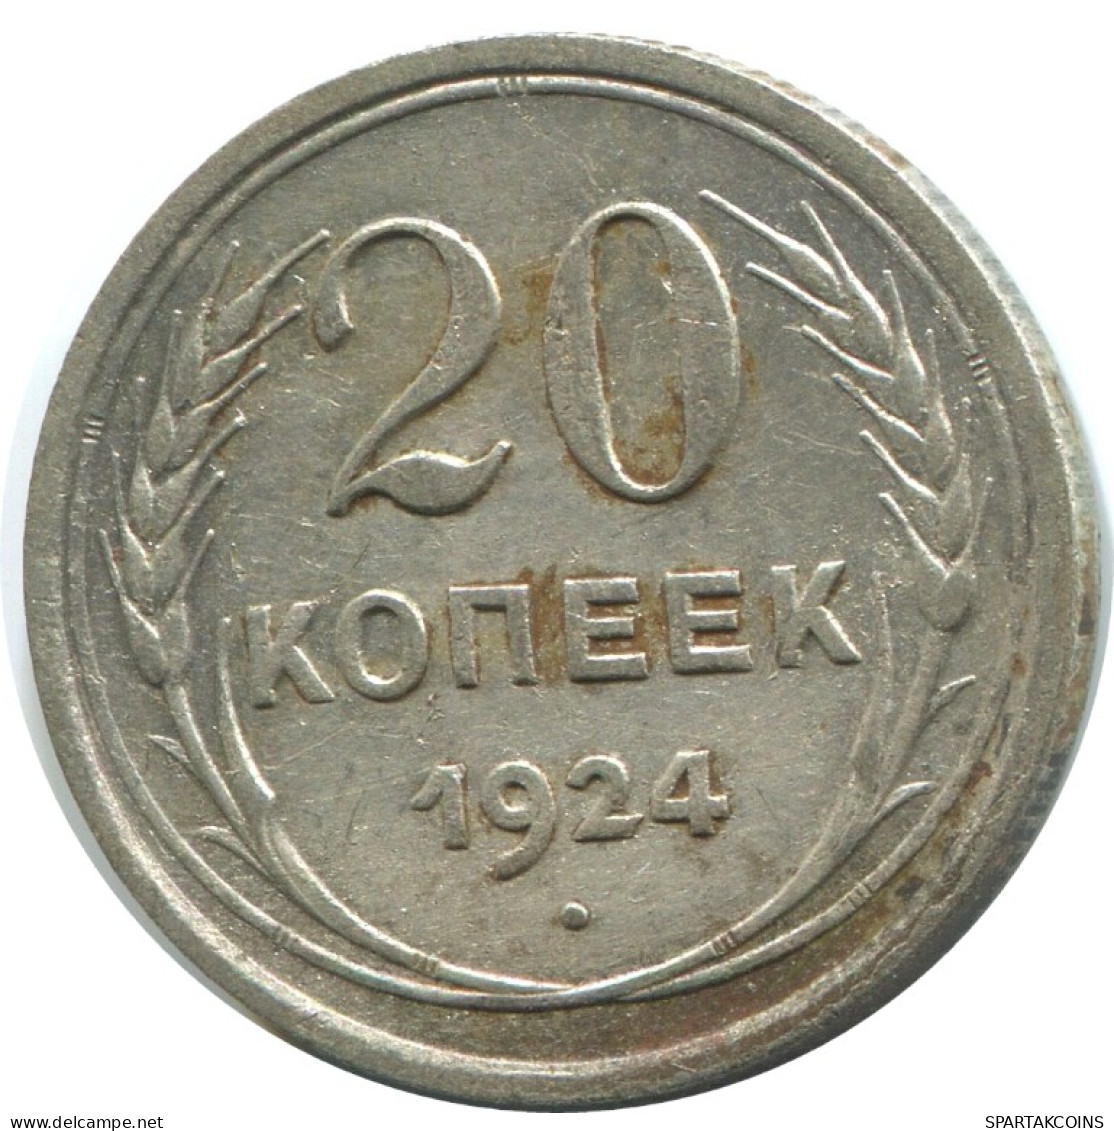 20 KOPEKS 1924 RUSSLAND RUSSIA USSR SILBER Münze HIGH GRADE #AF282.4.D.A - Rusia